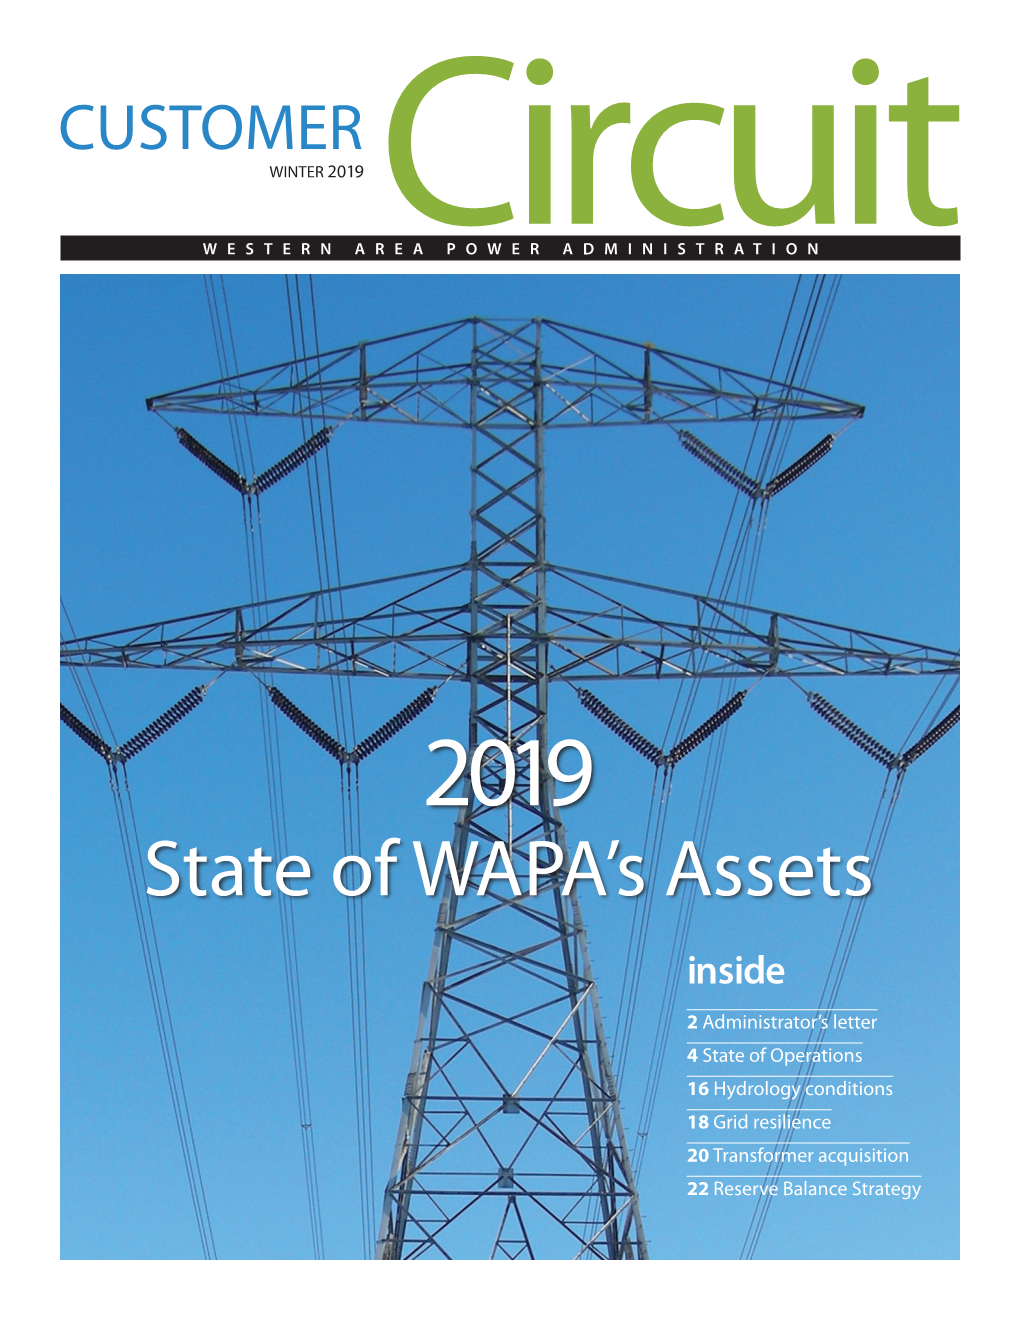 Winter 2019: State of WAPA's Assets